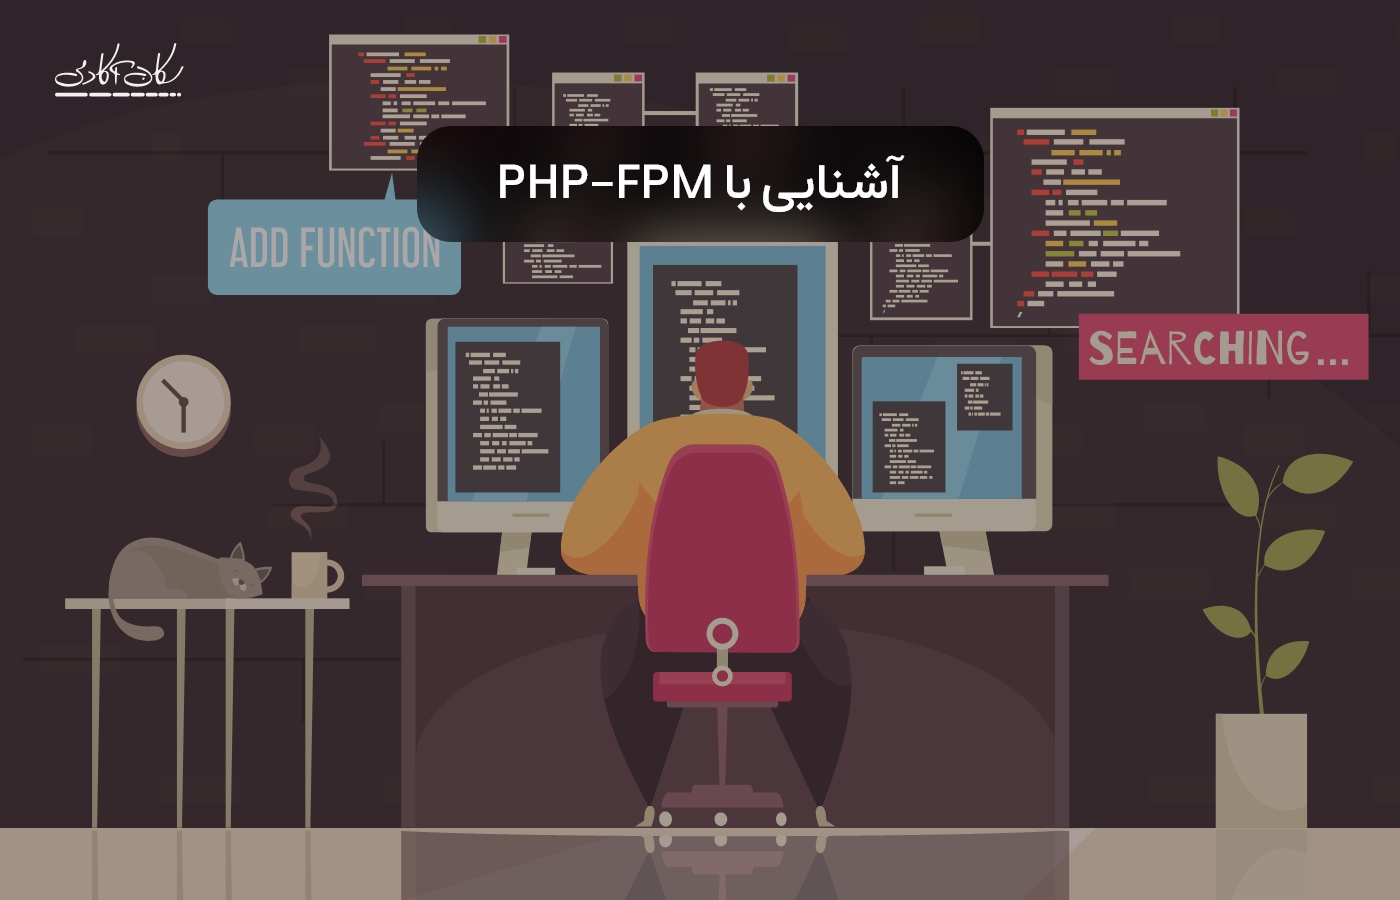 چگونه به PHP-FPM رسیدیم؟